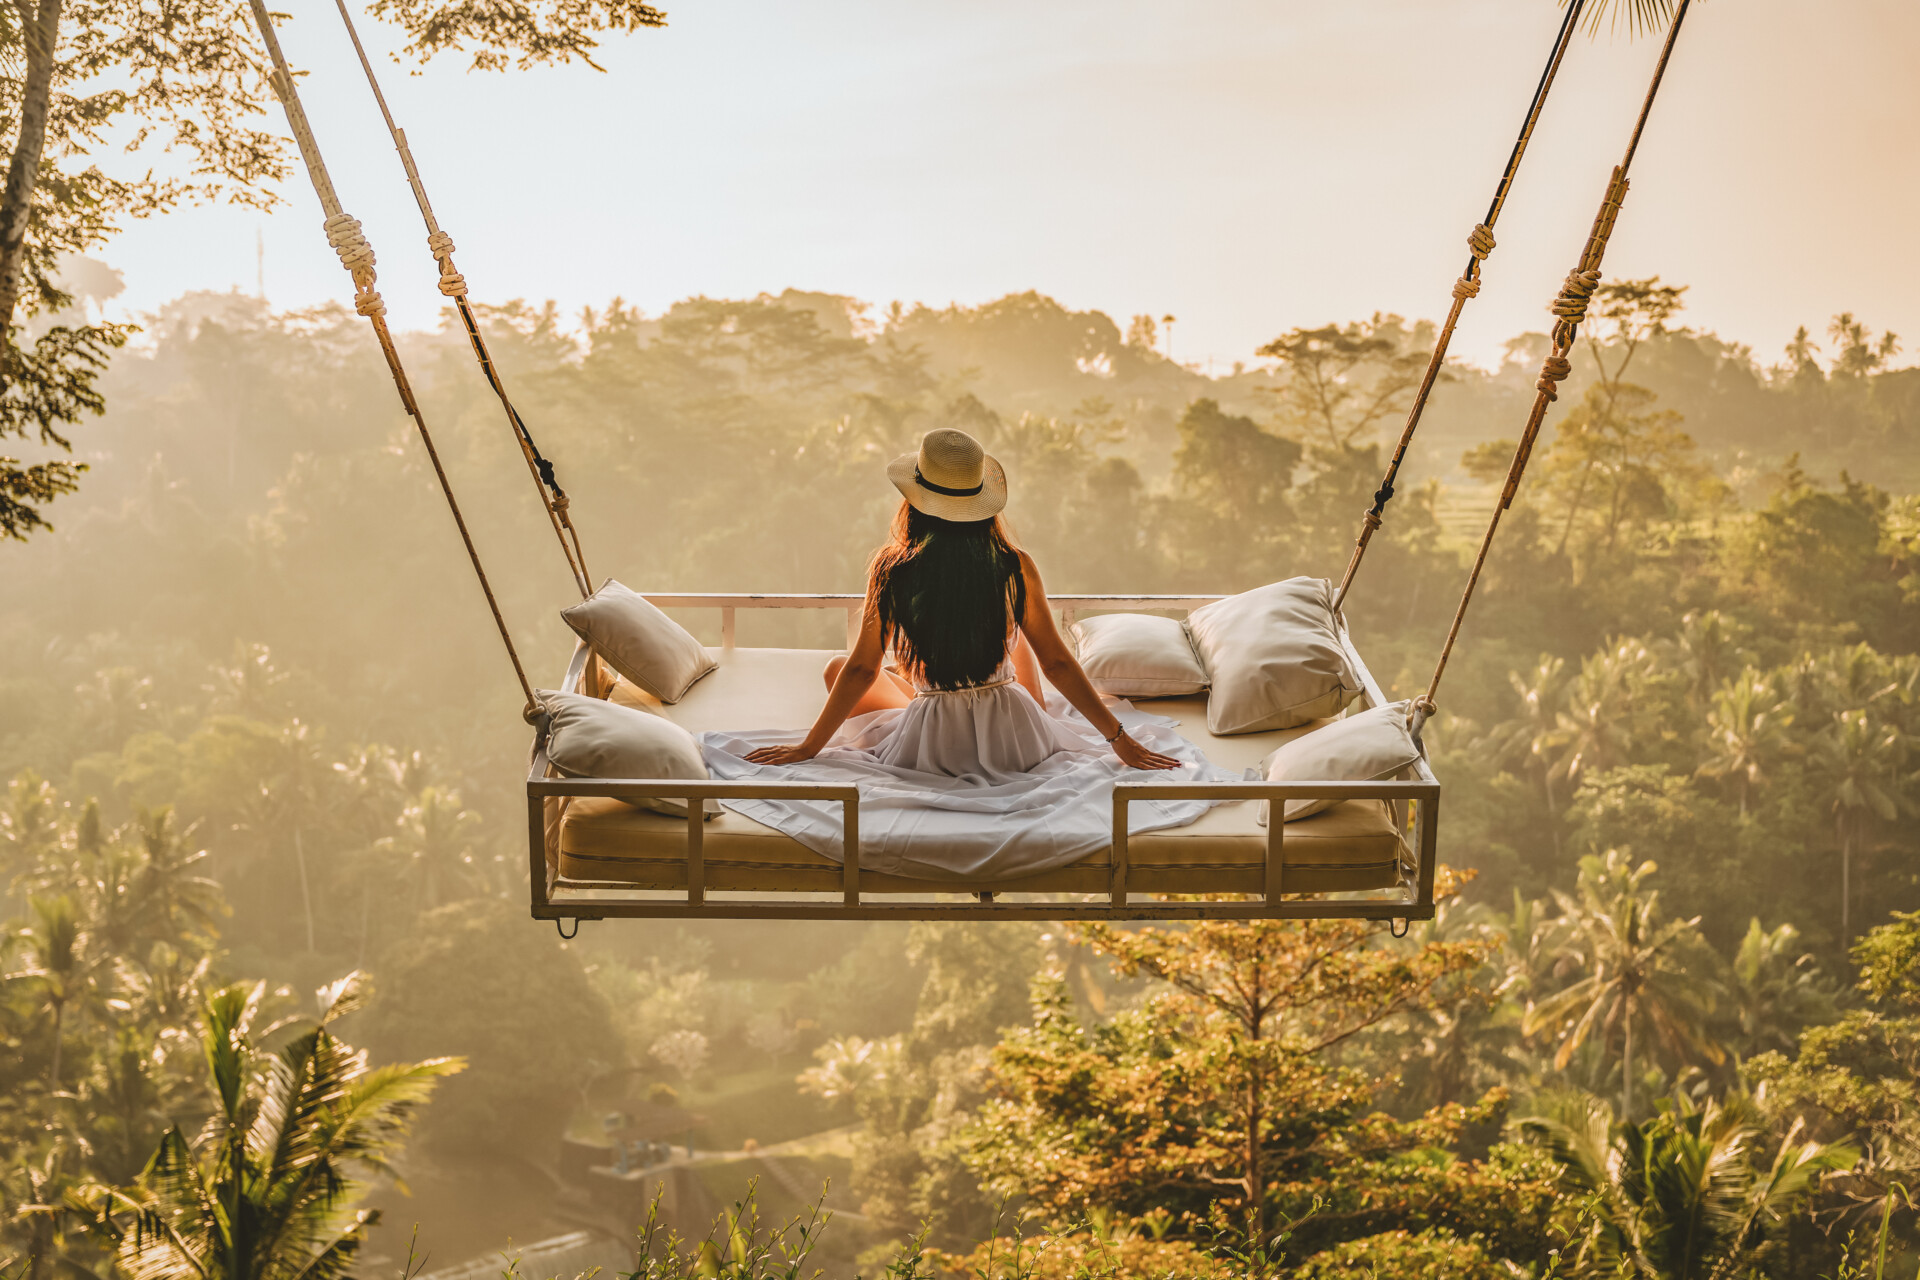 Eine Person sitzt mit dem Rücken zur Kamera auf einem großen Hängebett im Freien, umgeben von einem tropischen Wald. Die Morgensonne taucht die Szene in ein sanftes Licht. Die Person trägt einen Strohhut und blickt auf die üppigen Bäume und die Landschaft im Hintergrund.